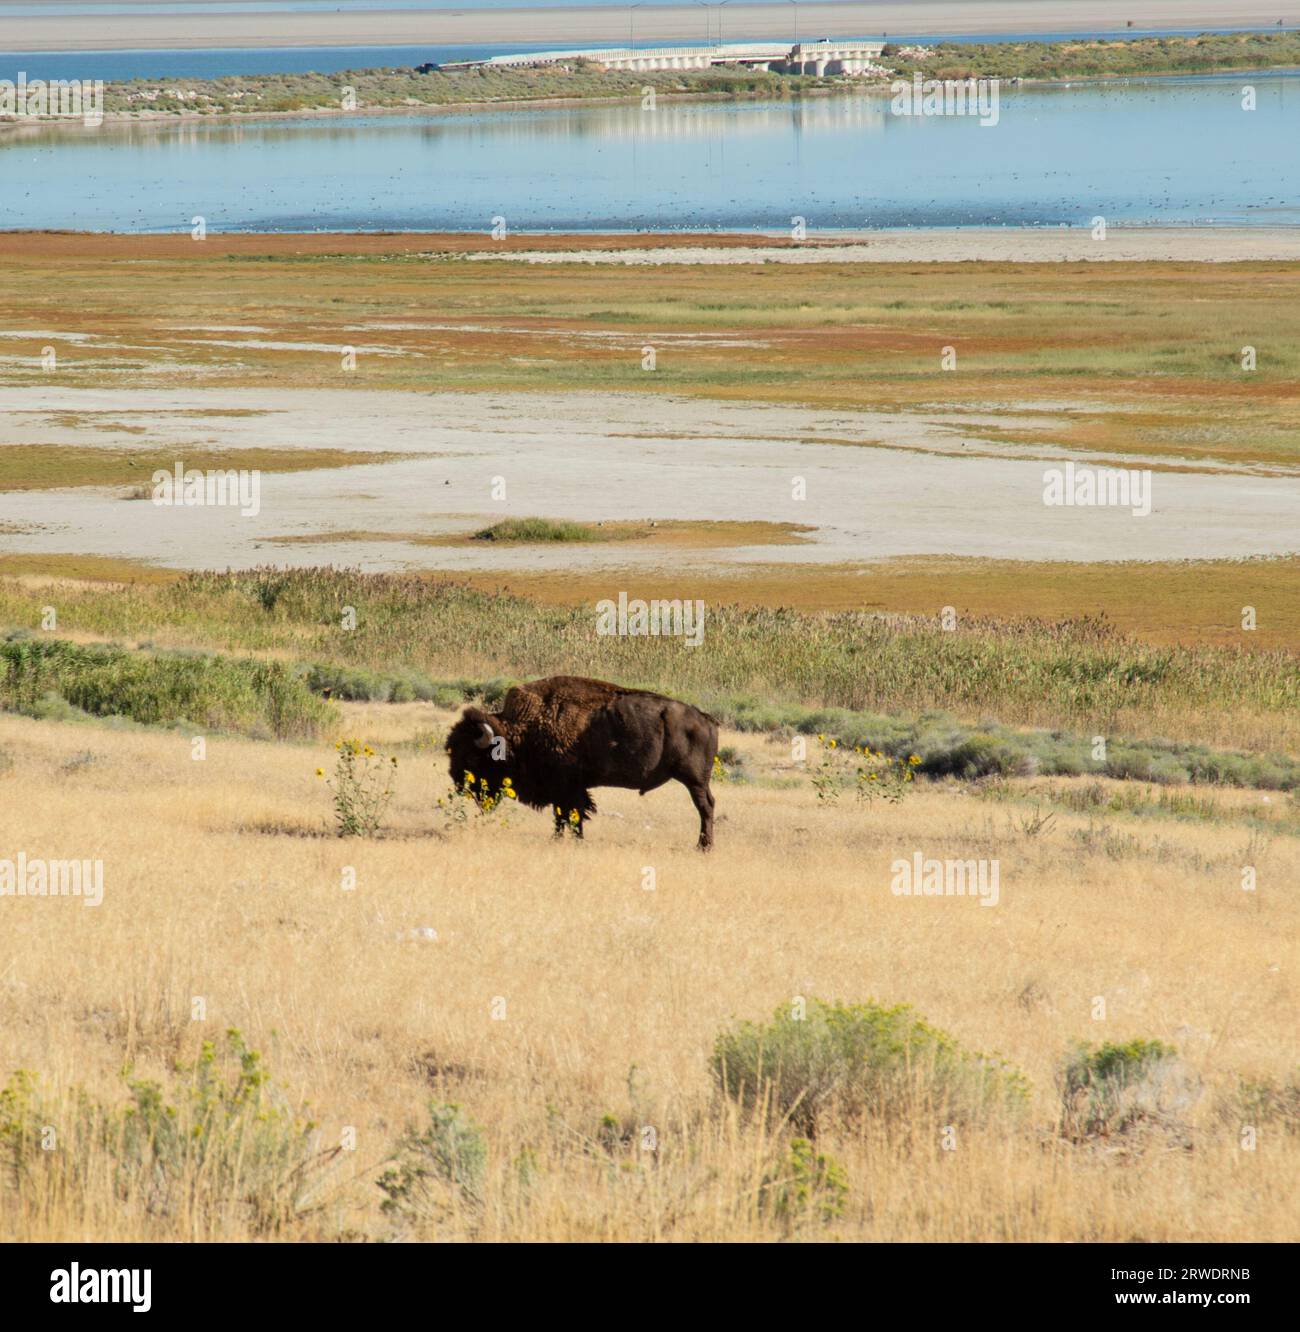 Ein Bison I die gelbe Grasprärie des Antelope Island State Park im Great Salt Lake, Utah. Stockfoto